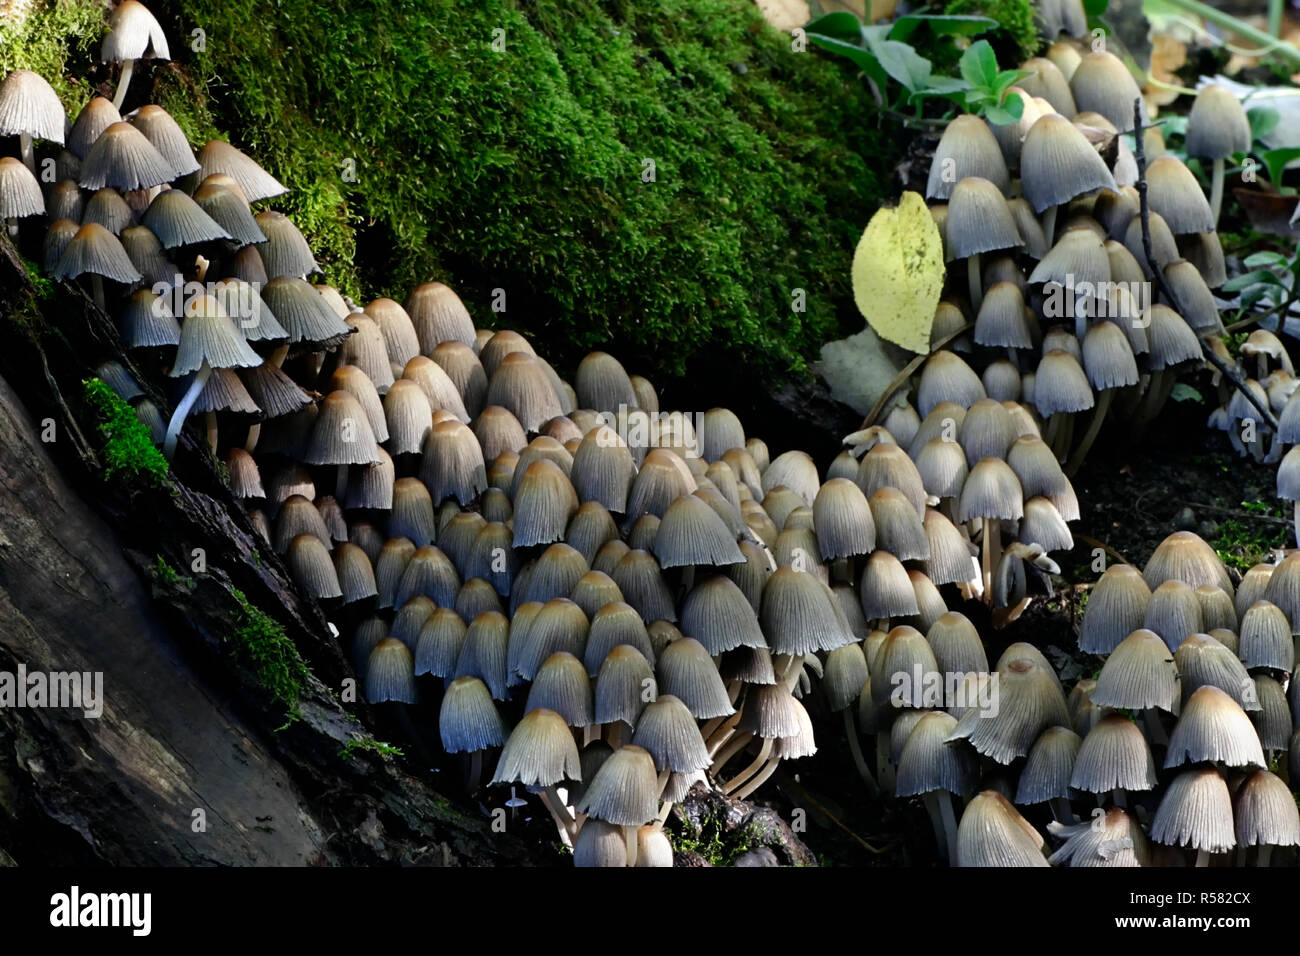 Coprinellus micaceus, Glistening Inkcap mushroom Stock Photo